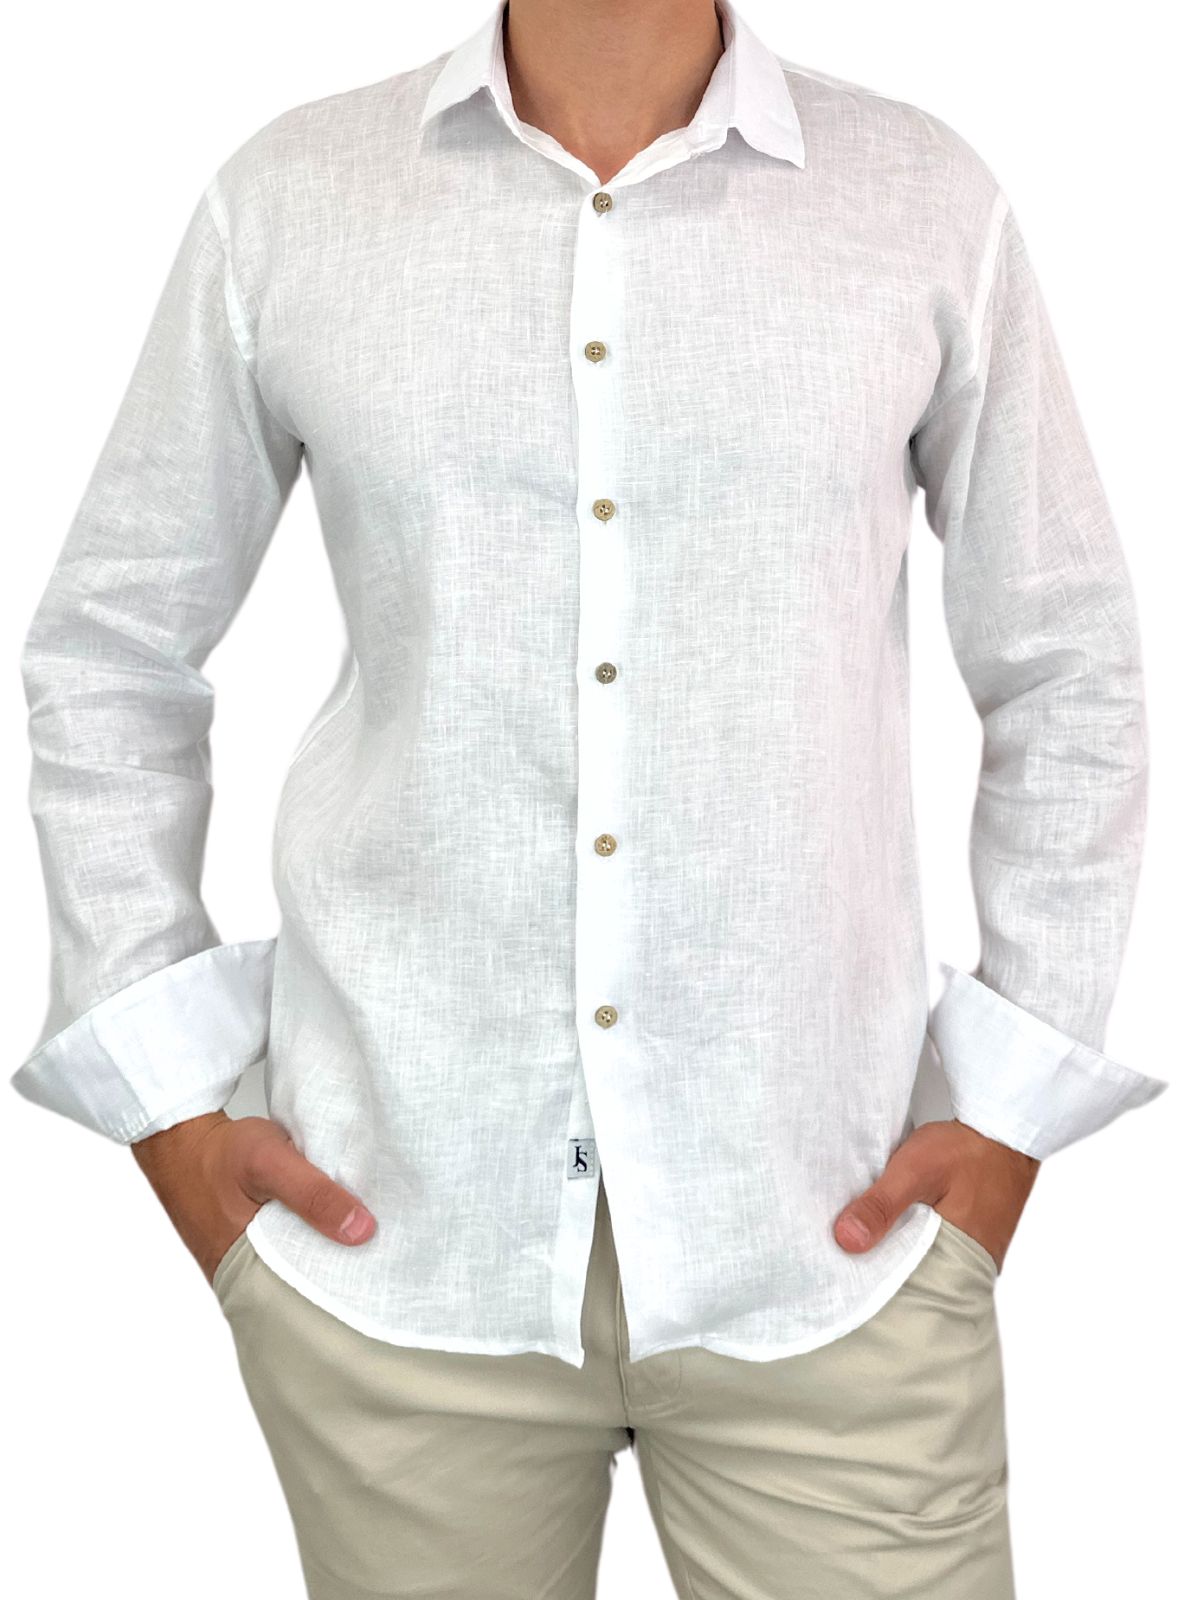 Byron Bay White Linen L/S Shirt